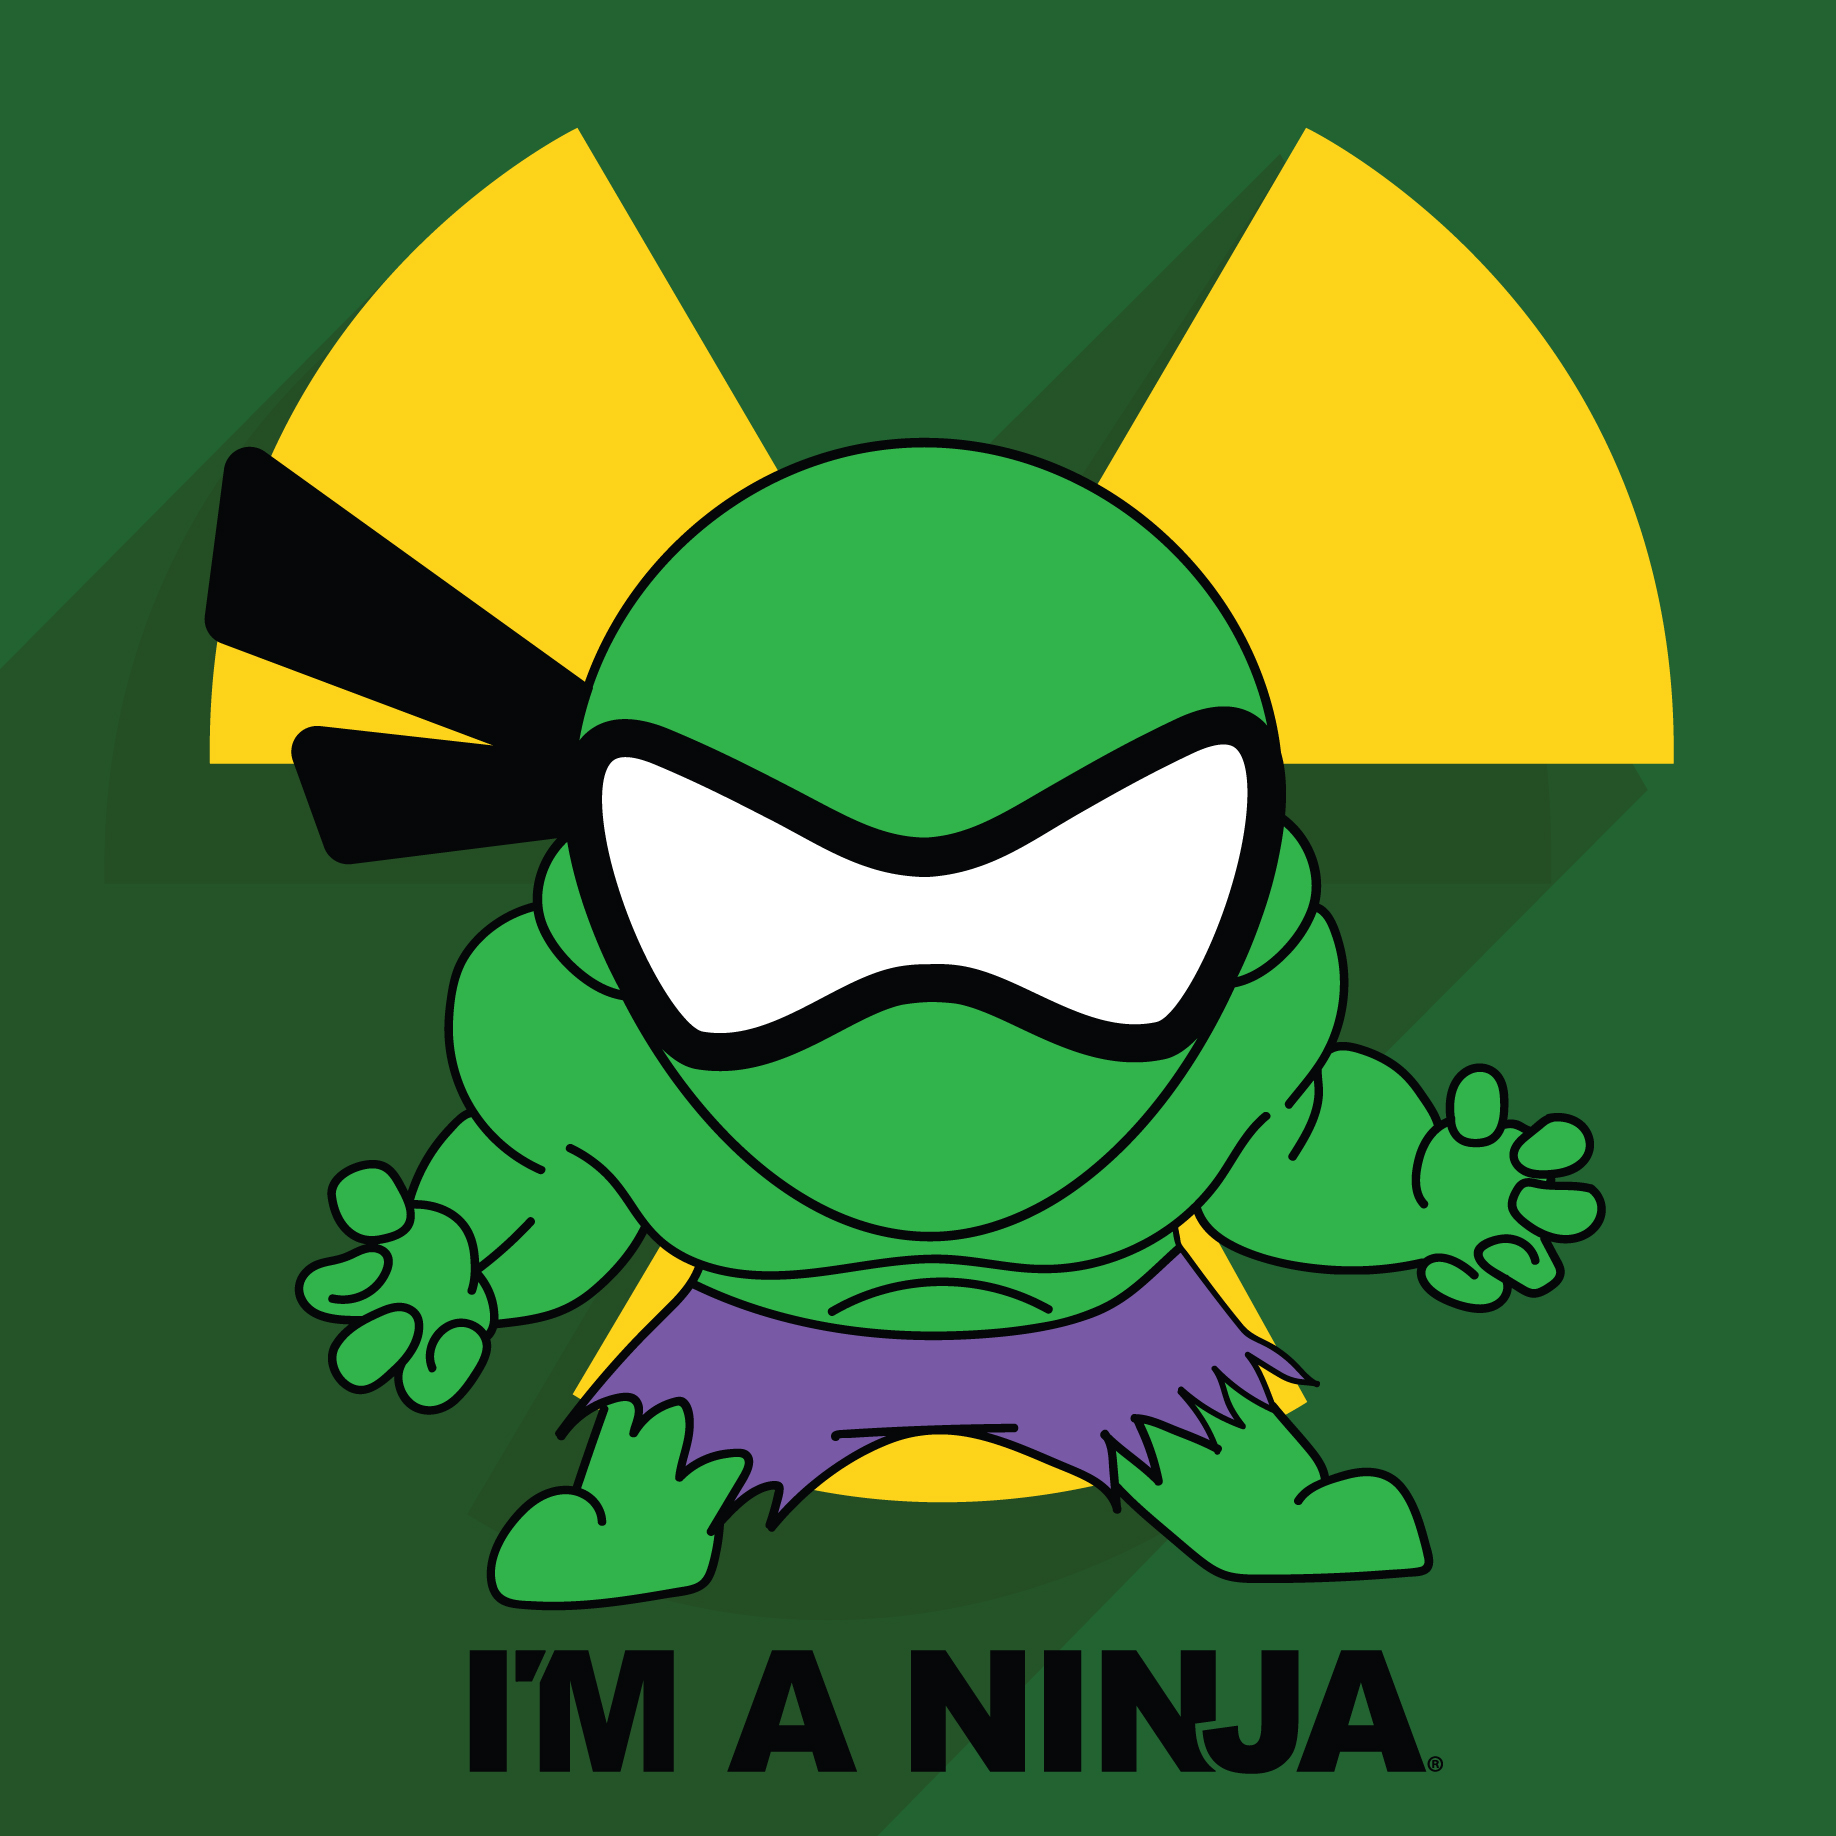 The Hulk x I'M A NINJA